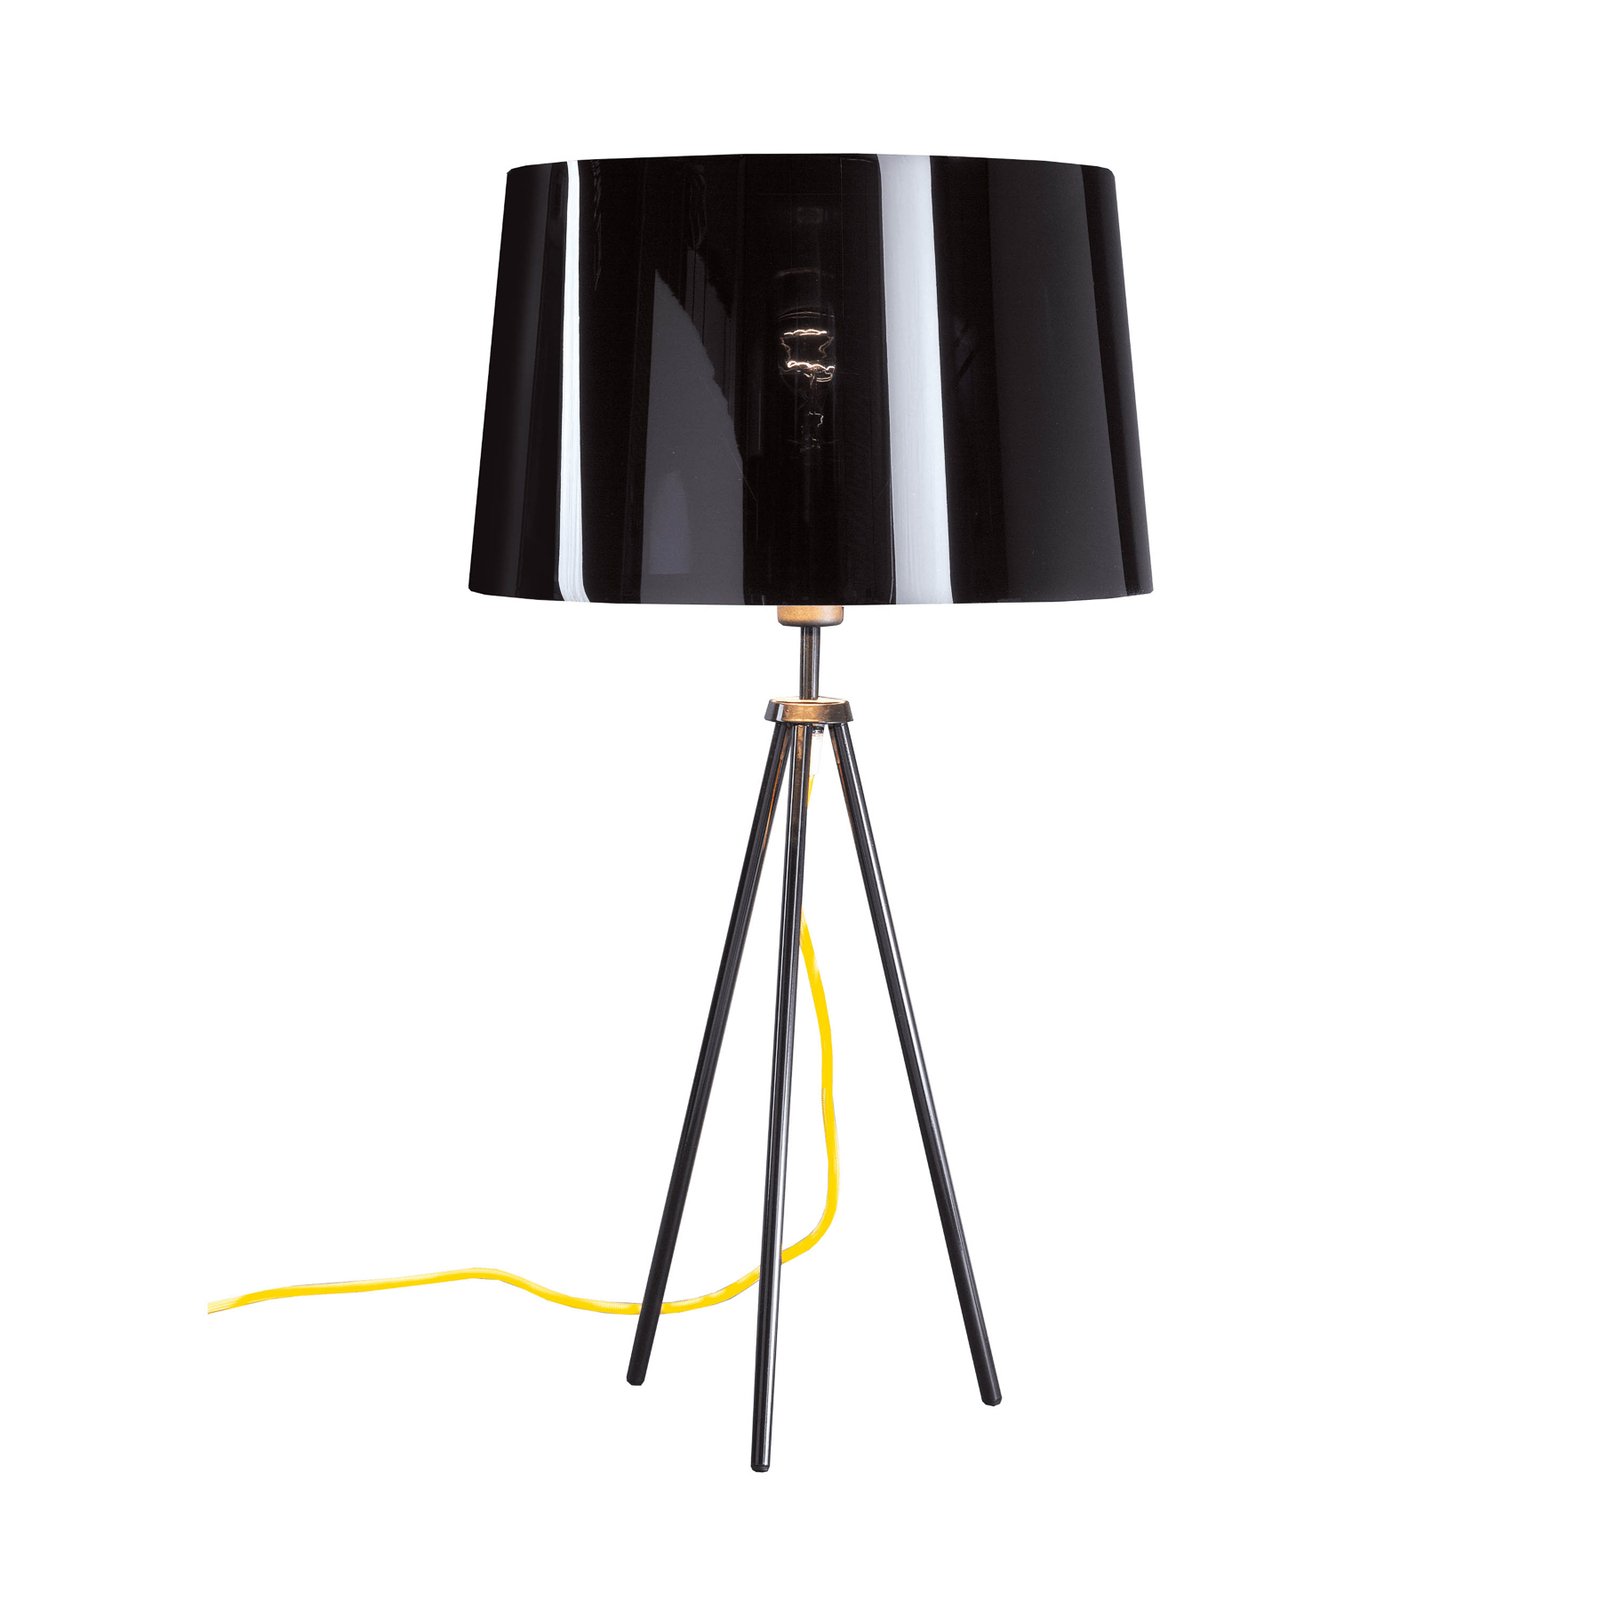 Aluminor Tropic stolní lampa černá, kabel žlutý